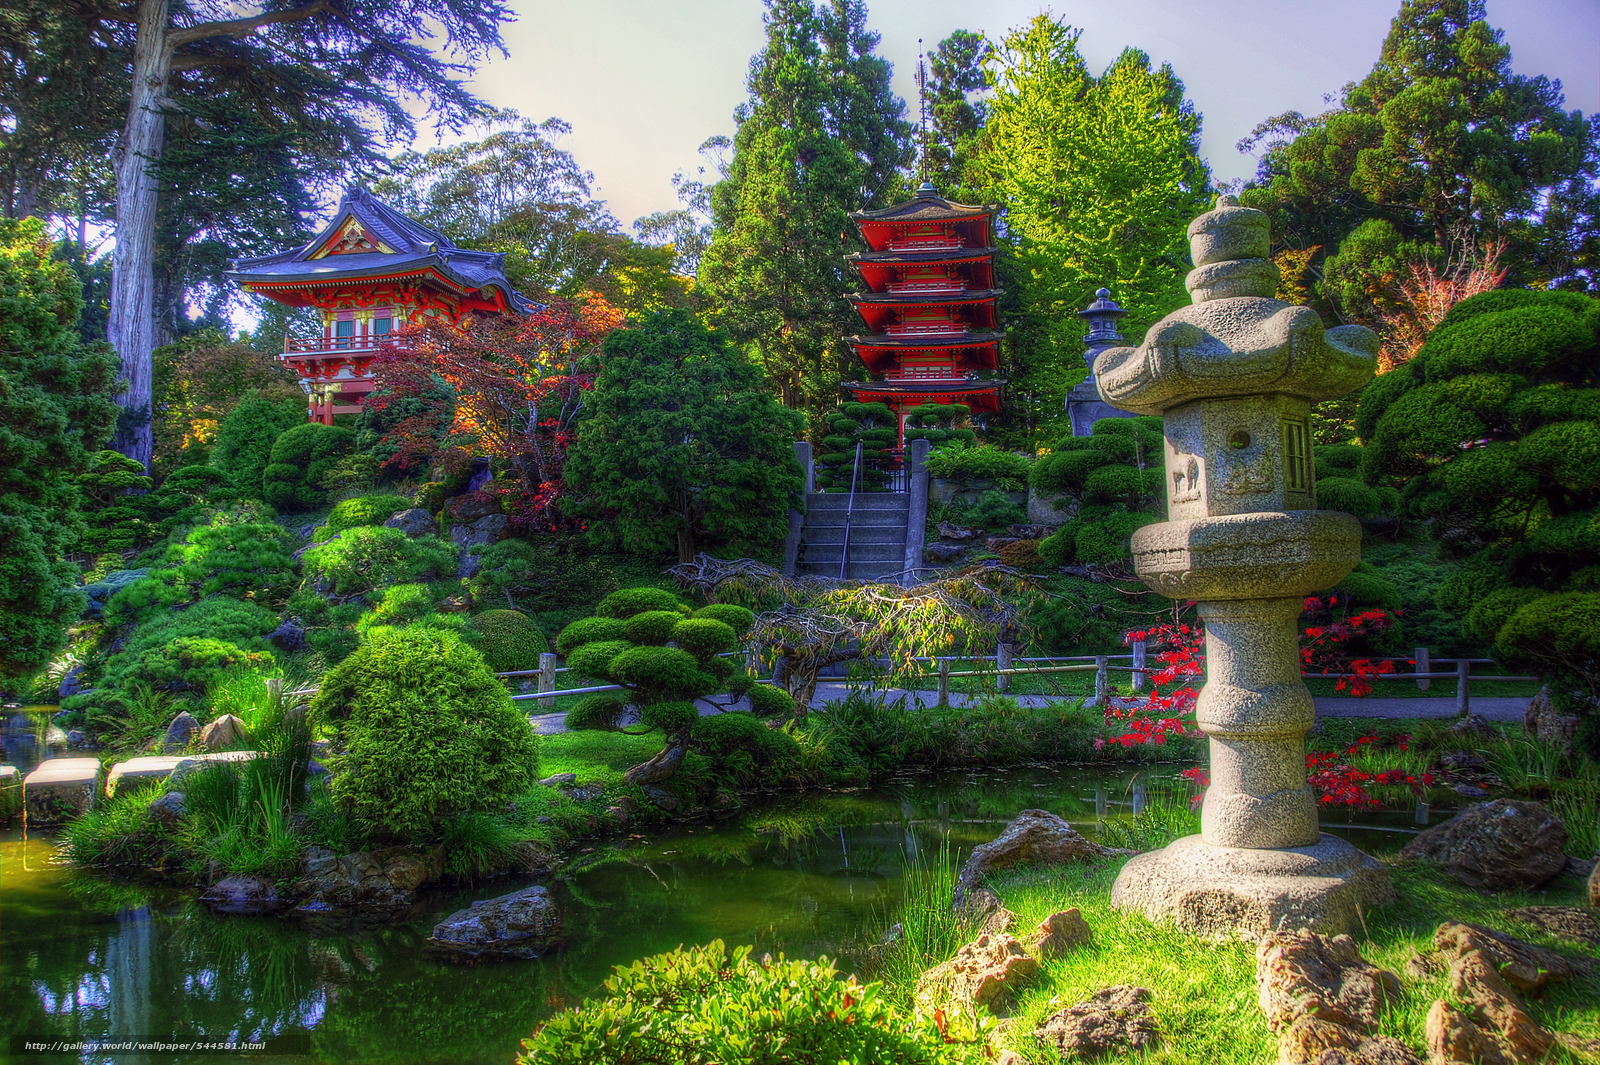  San Francisco California Japanese Tea Garden Japanese Garden